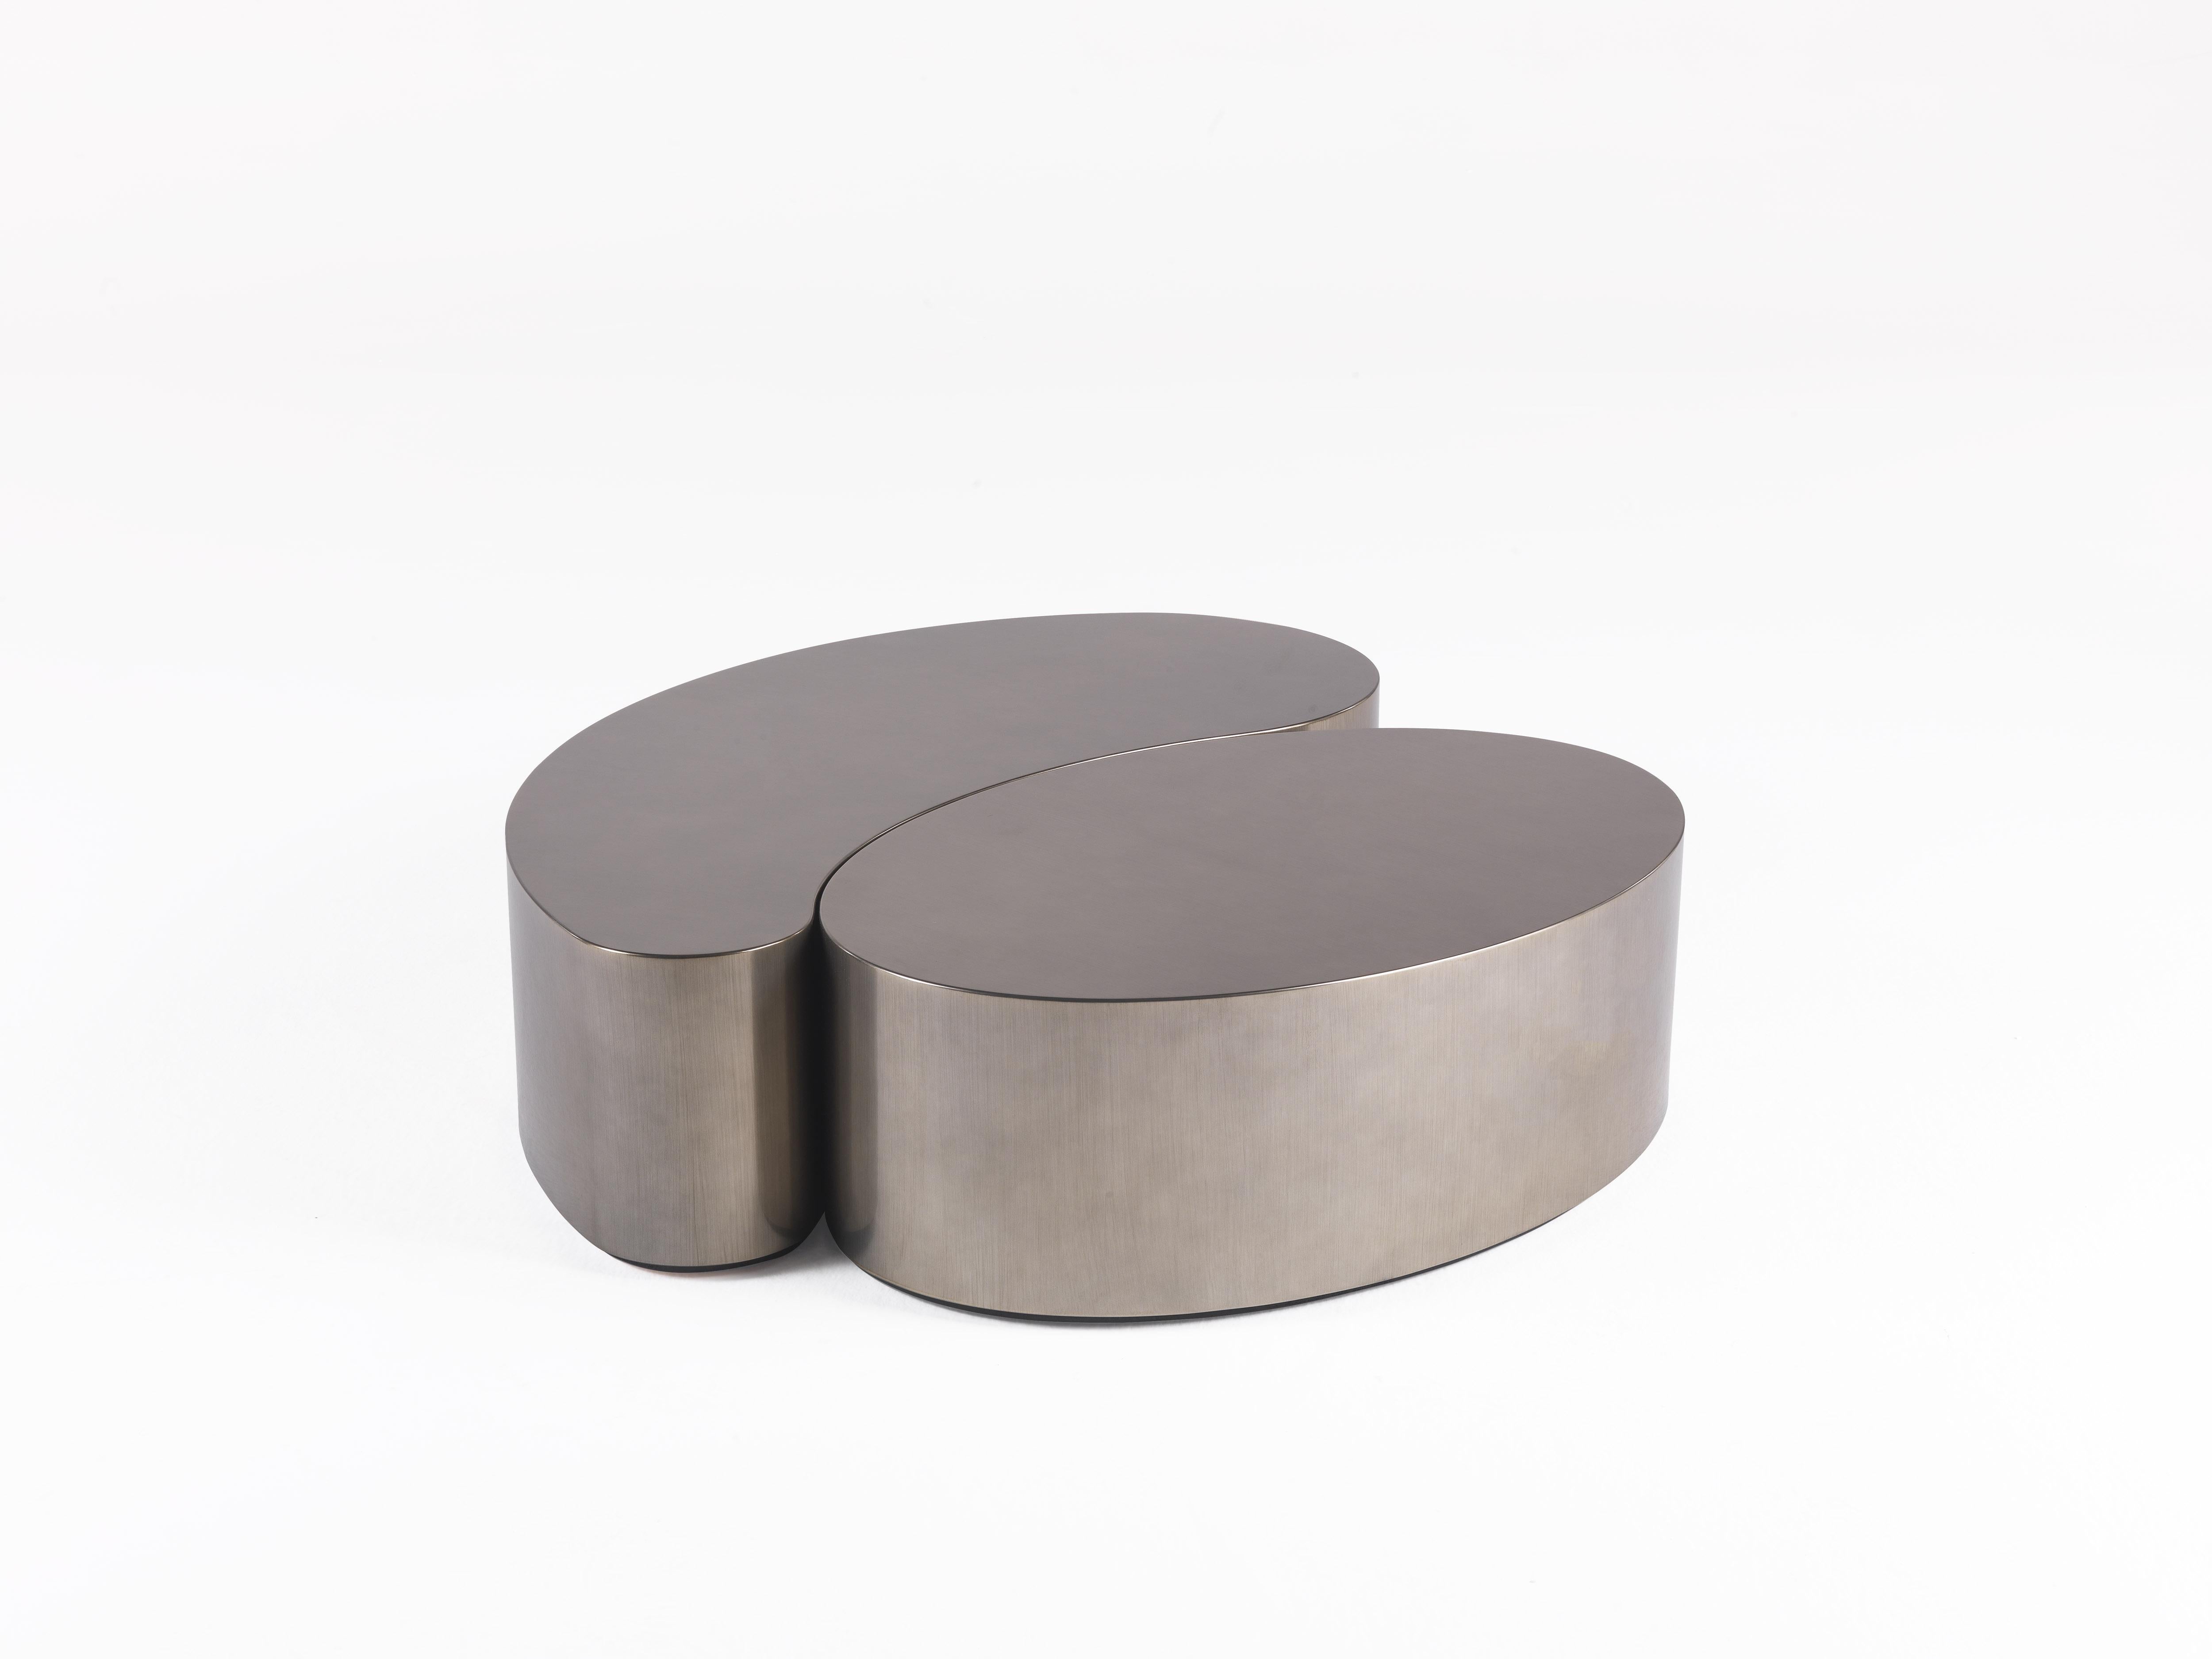 Eine emblematische Umarmung zwischen zwei verschiedenen Elementen: die Paisley-Form und die ovalen Komponenten aus verschiedenen Materialien treffen aufeinander und schaffen unendliche Kompositionen.

GOA Paisley-förmiger Tisch aus patiniertem,